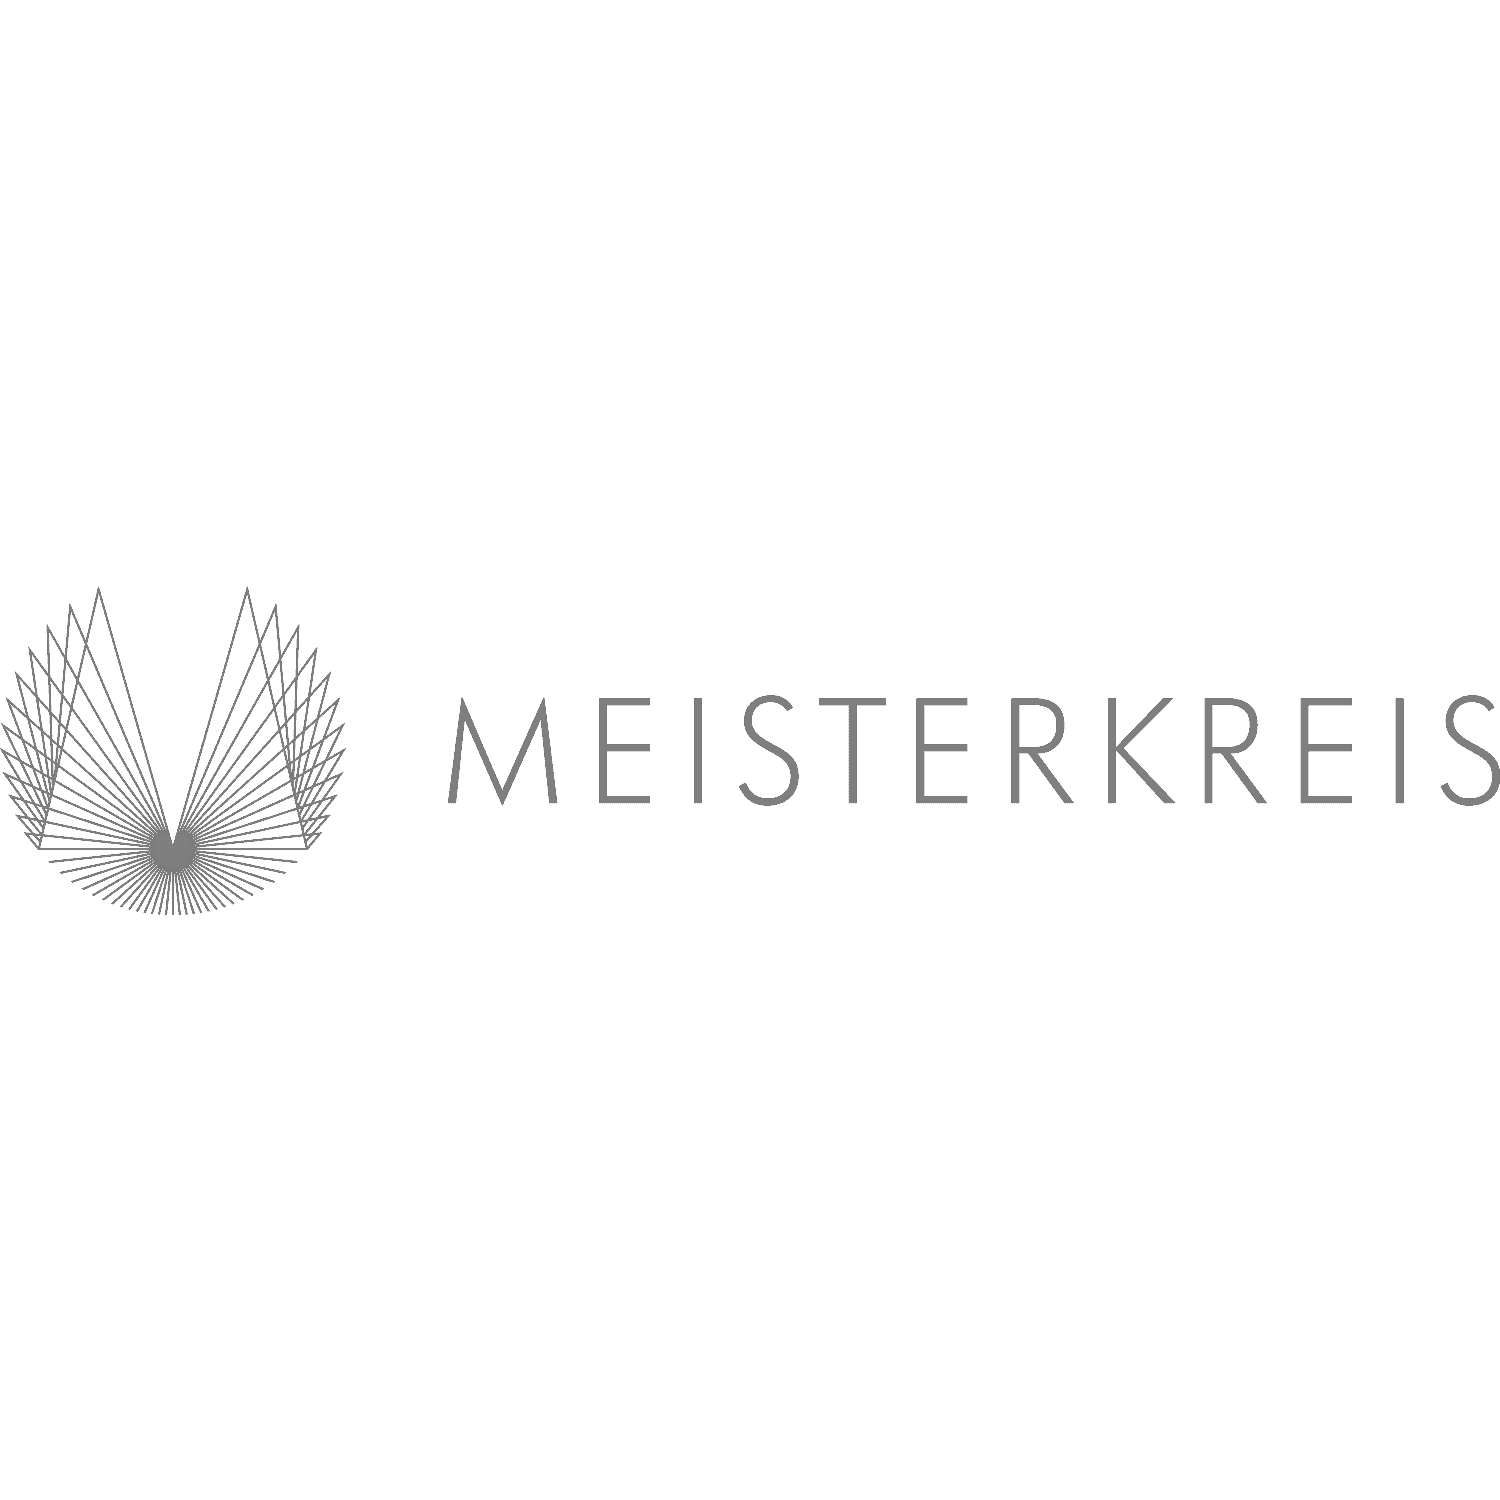 Das Logo von Meisterkreis